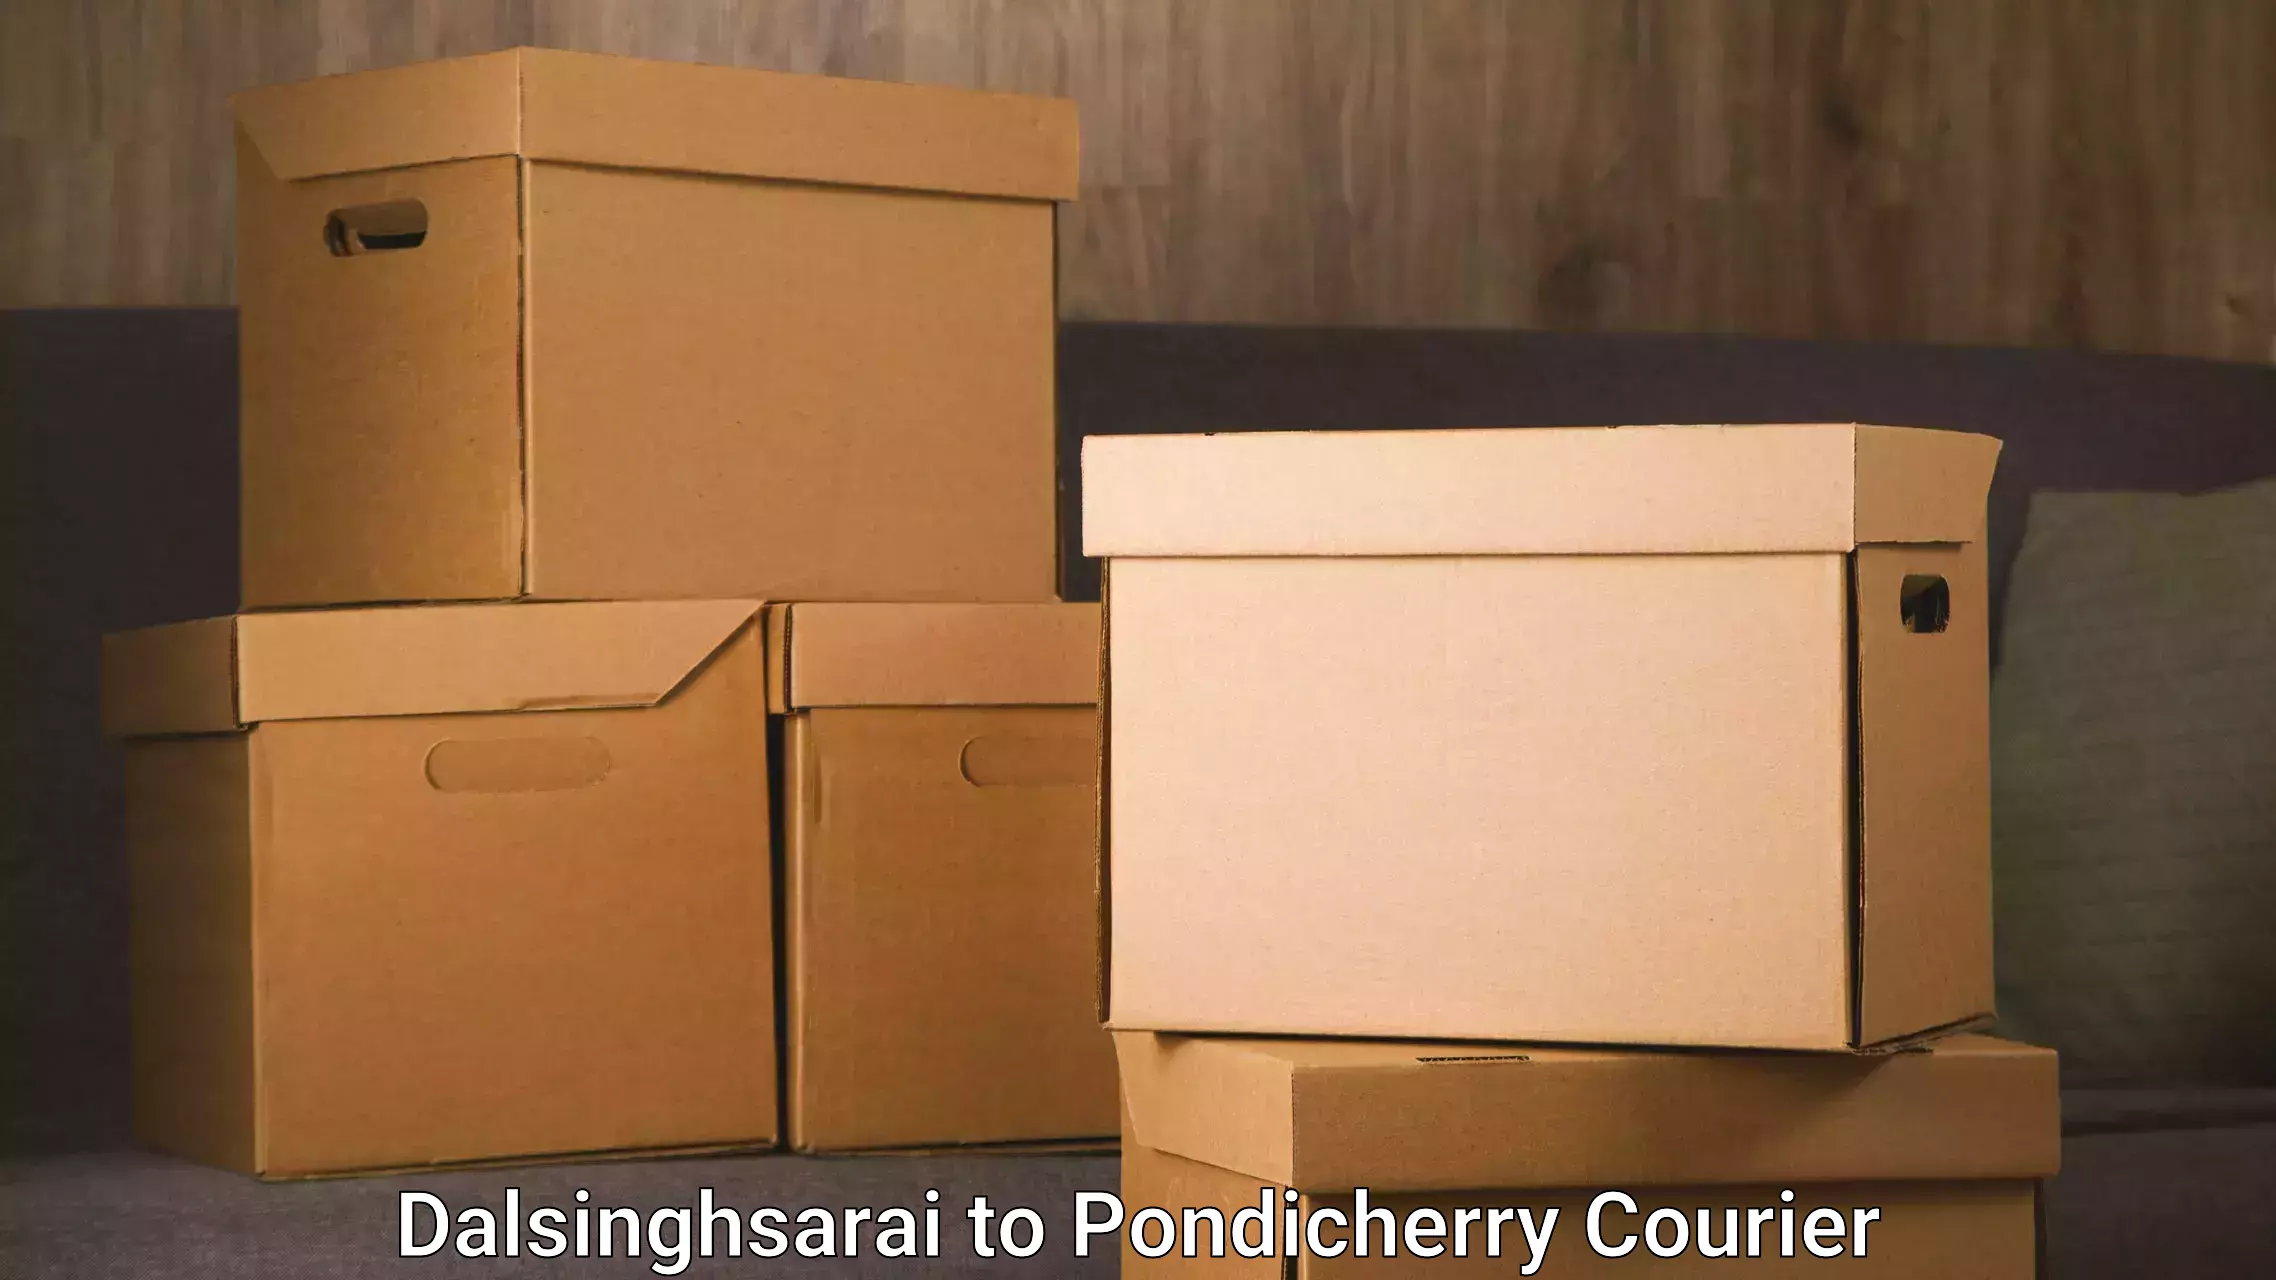 Furniture delivery service Dalsinghsarai to Pondicherry